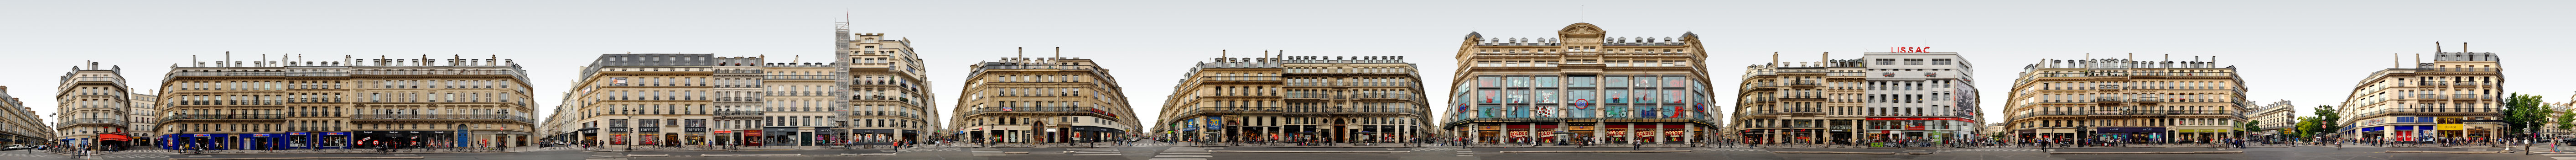 Rue de Rivoli street view france